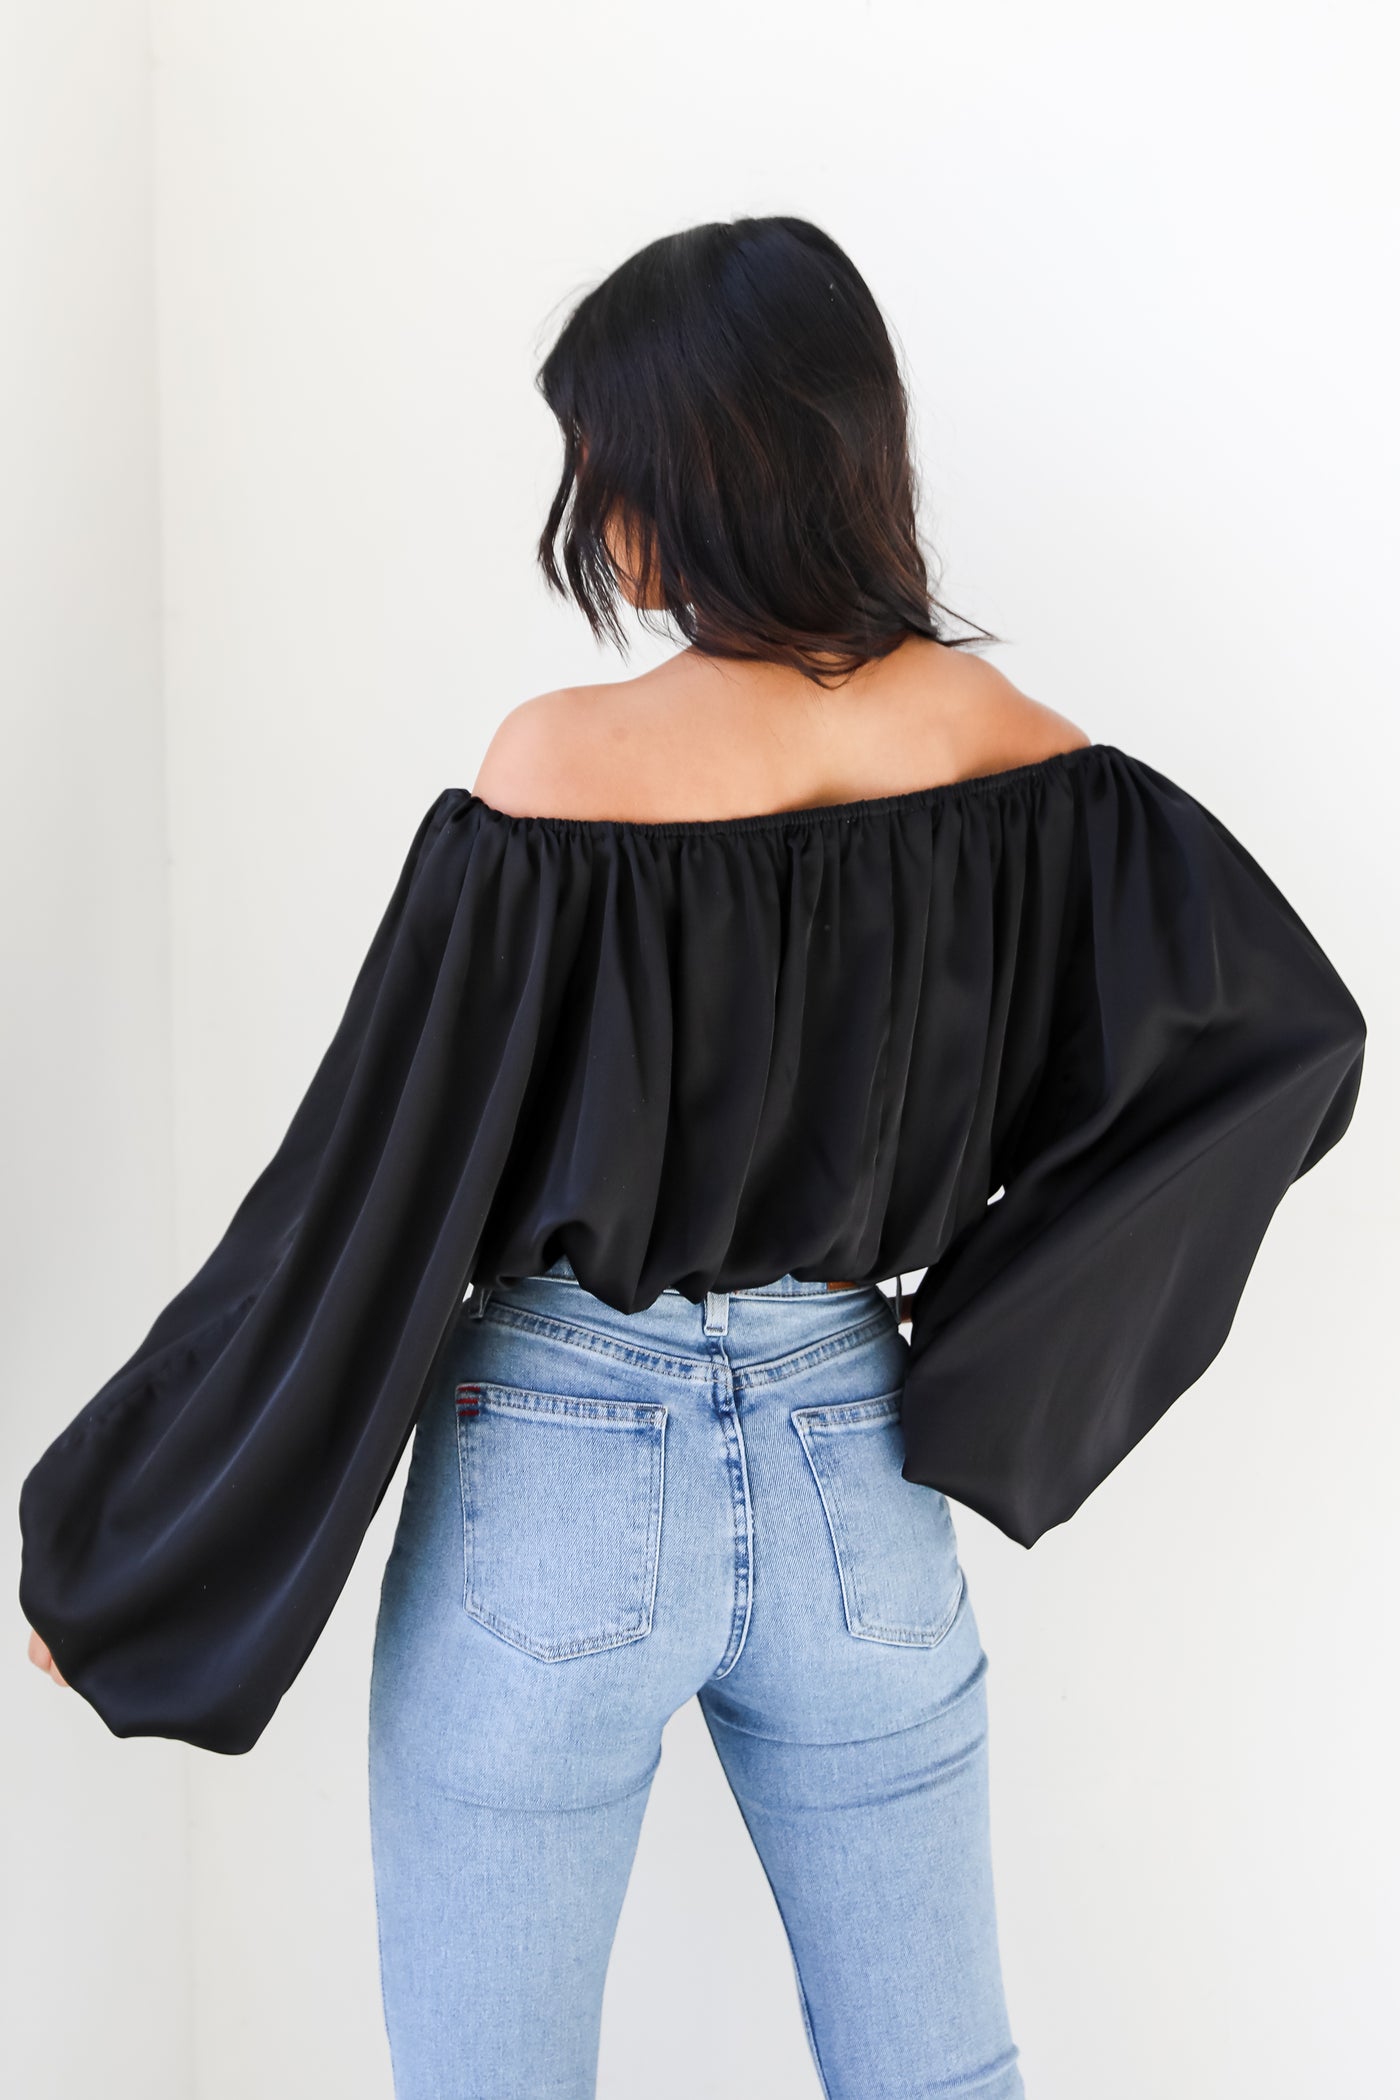 black satin blouse back view